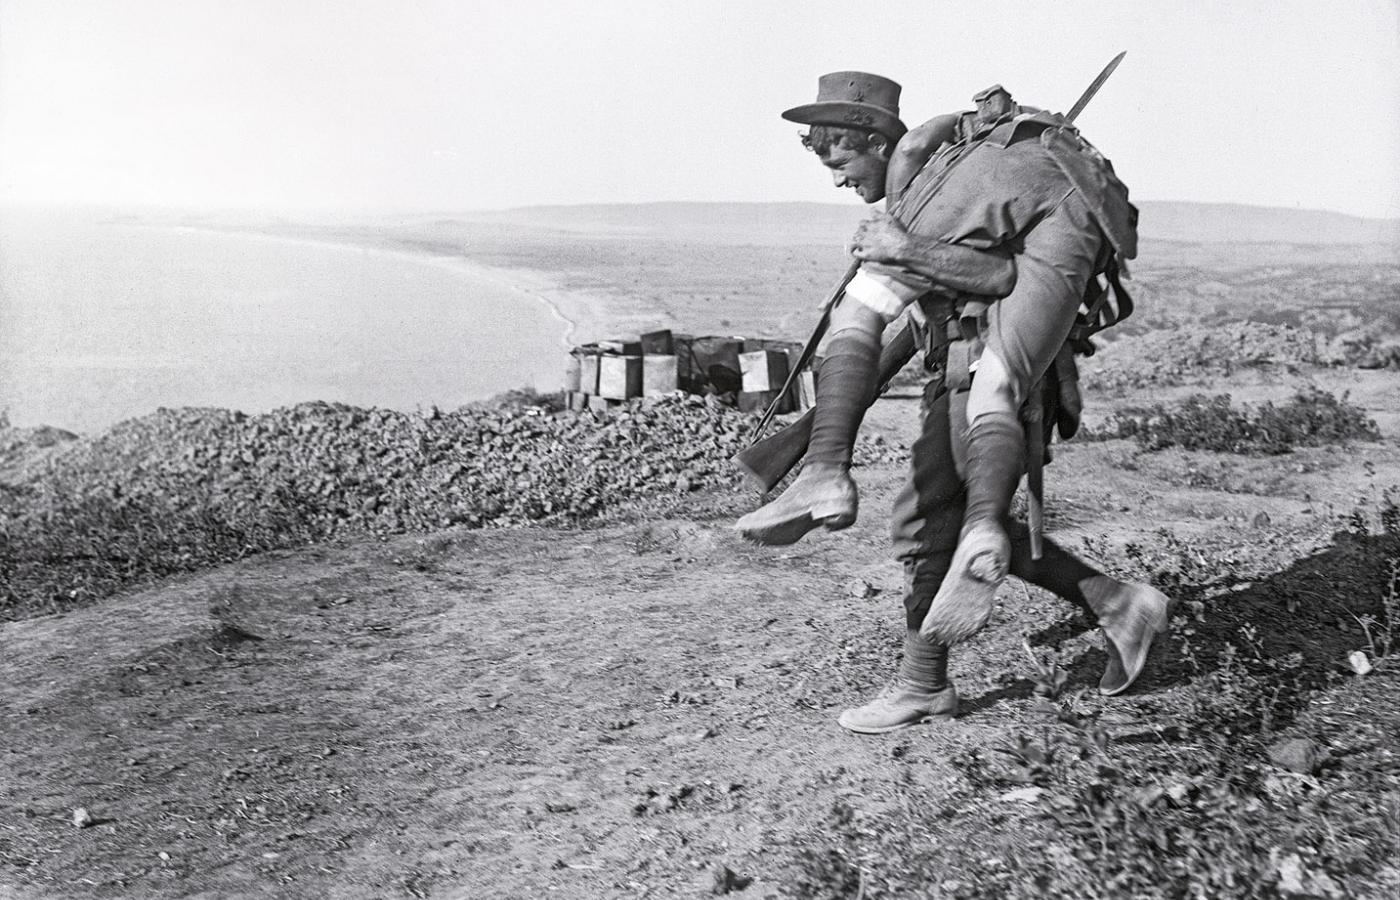 Żołnierz sił ANZAC znosi rannego z pola walki, półwysep Gallipoli, 1915 r.